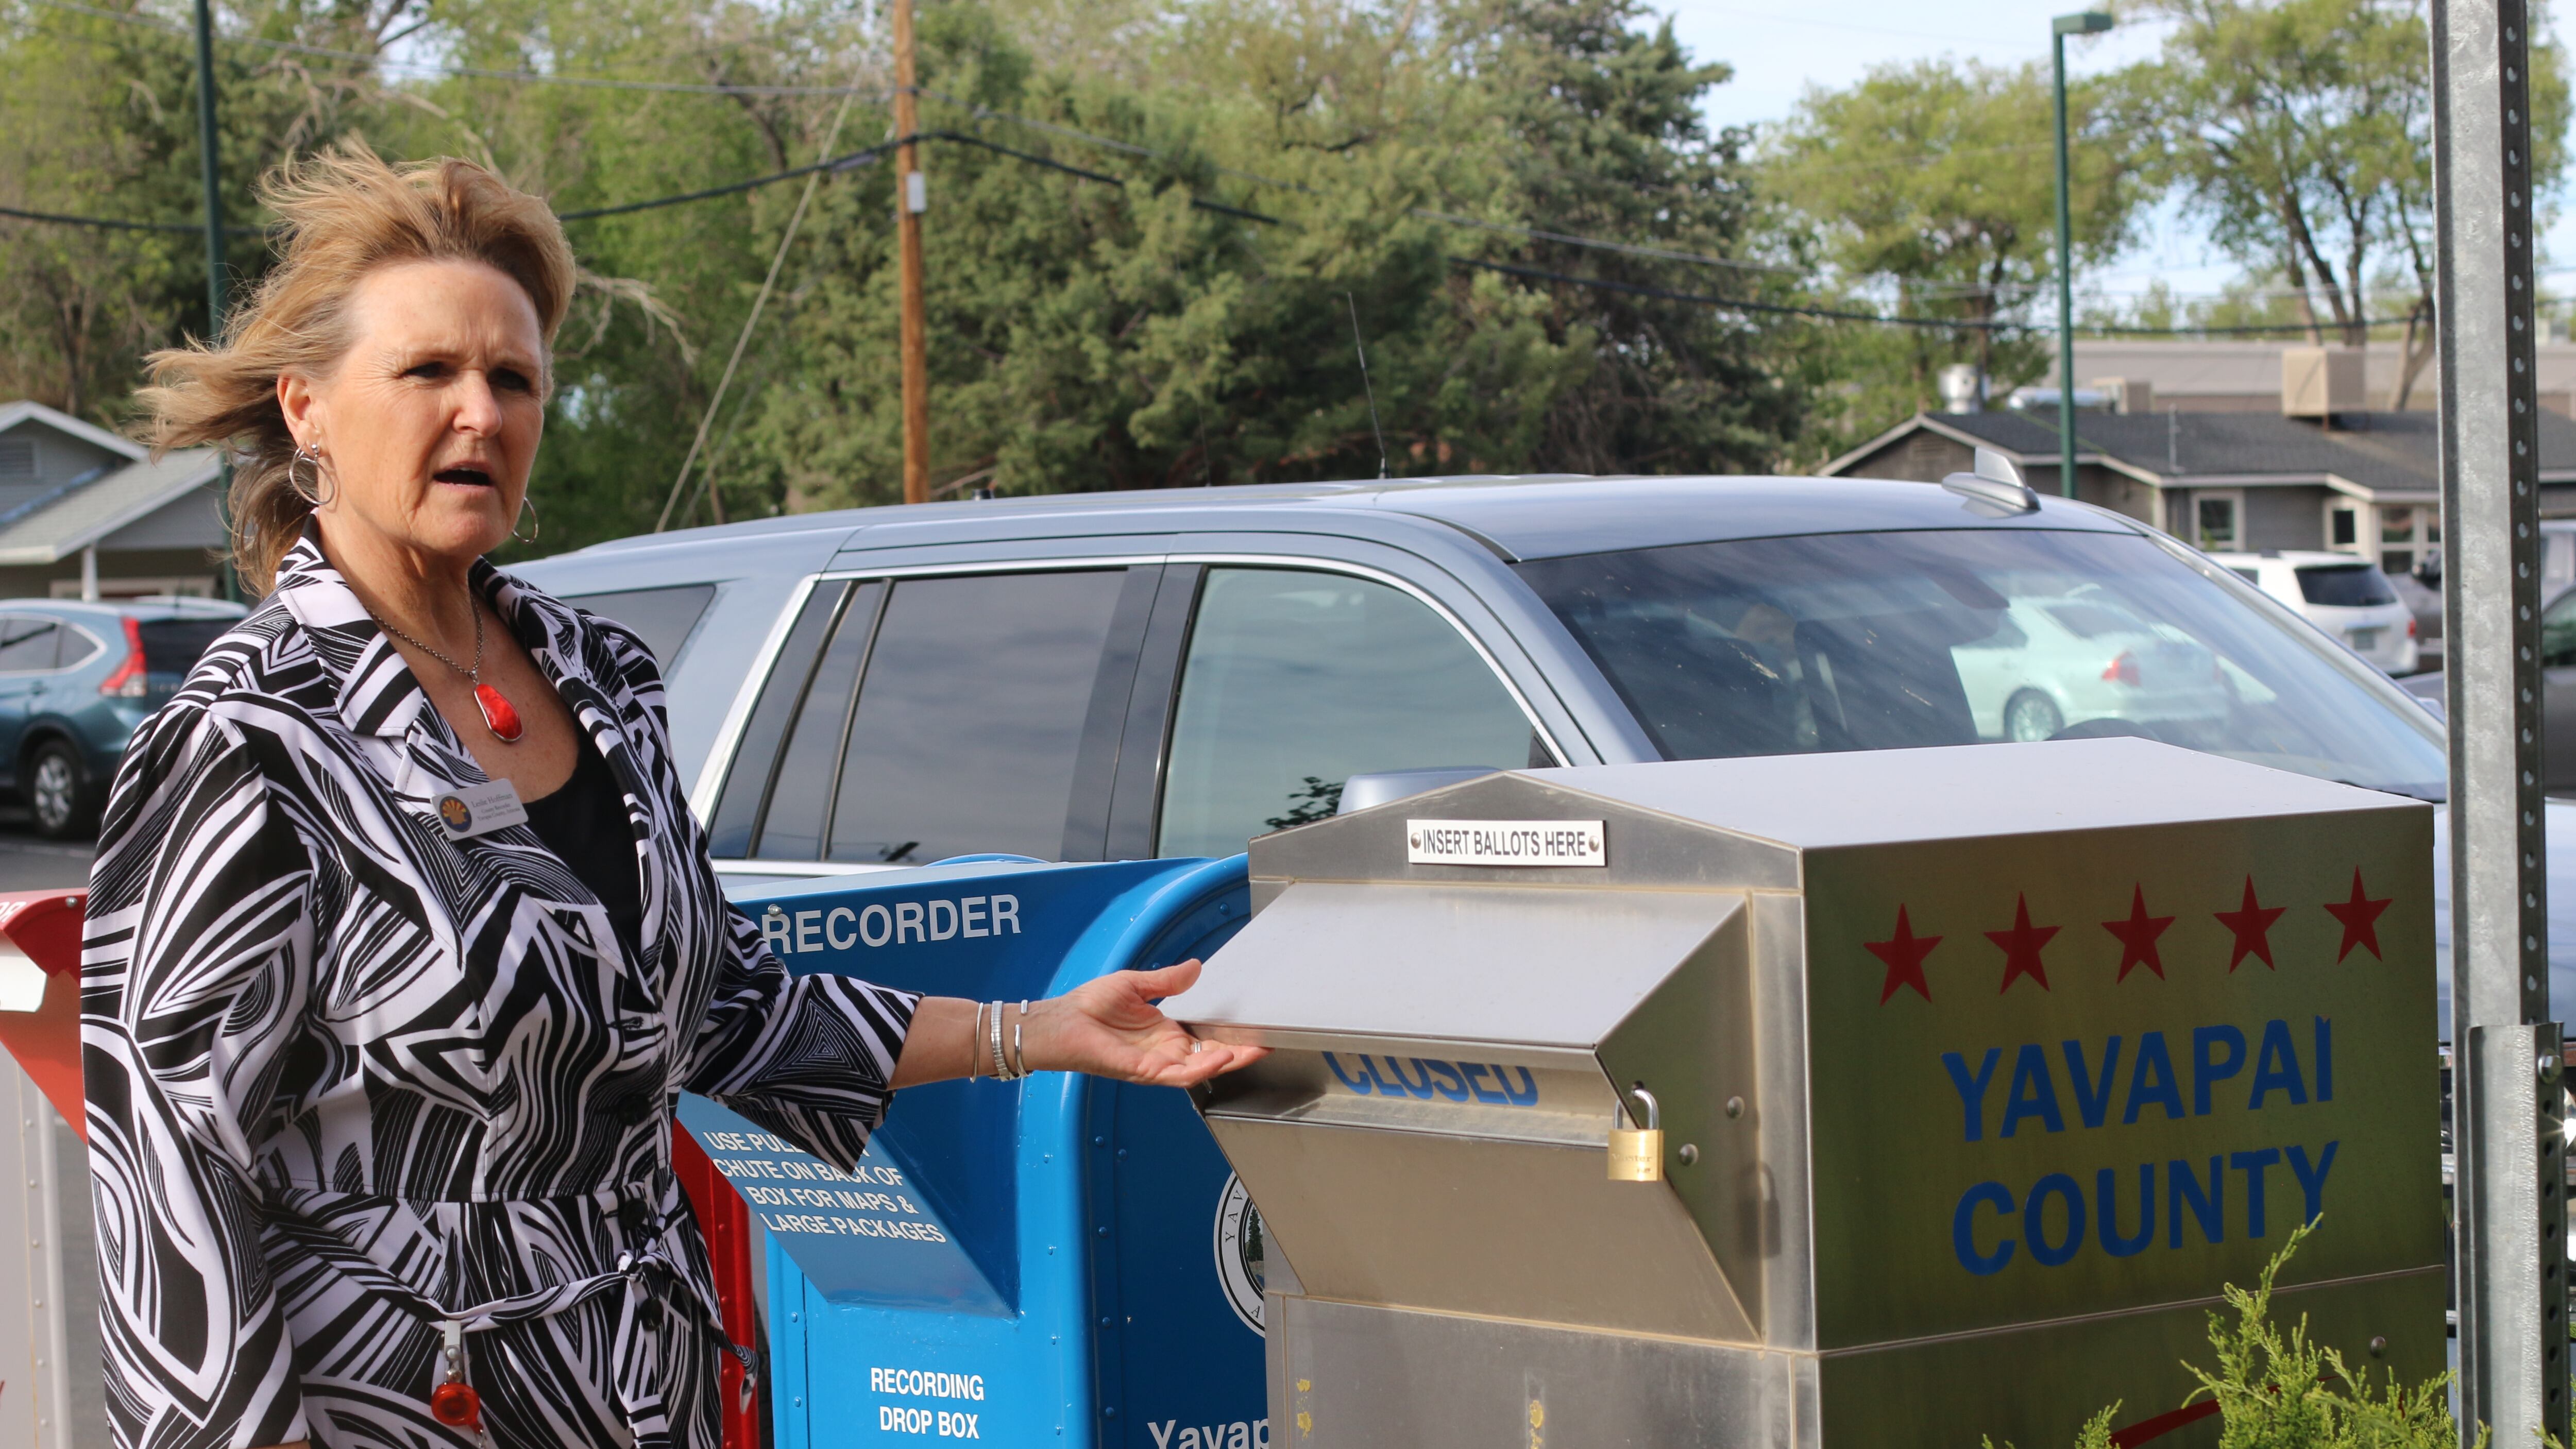 Woman in striped shirt reaches toward a ballot drop box on a sidewalk.